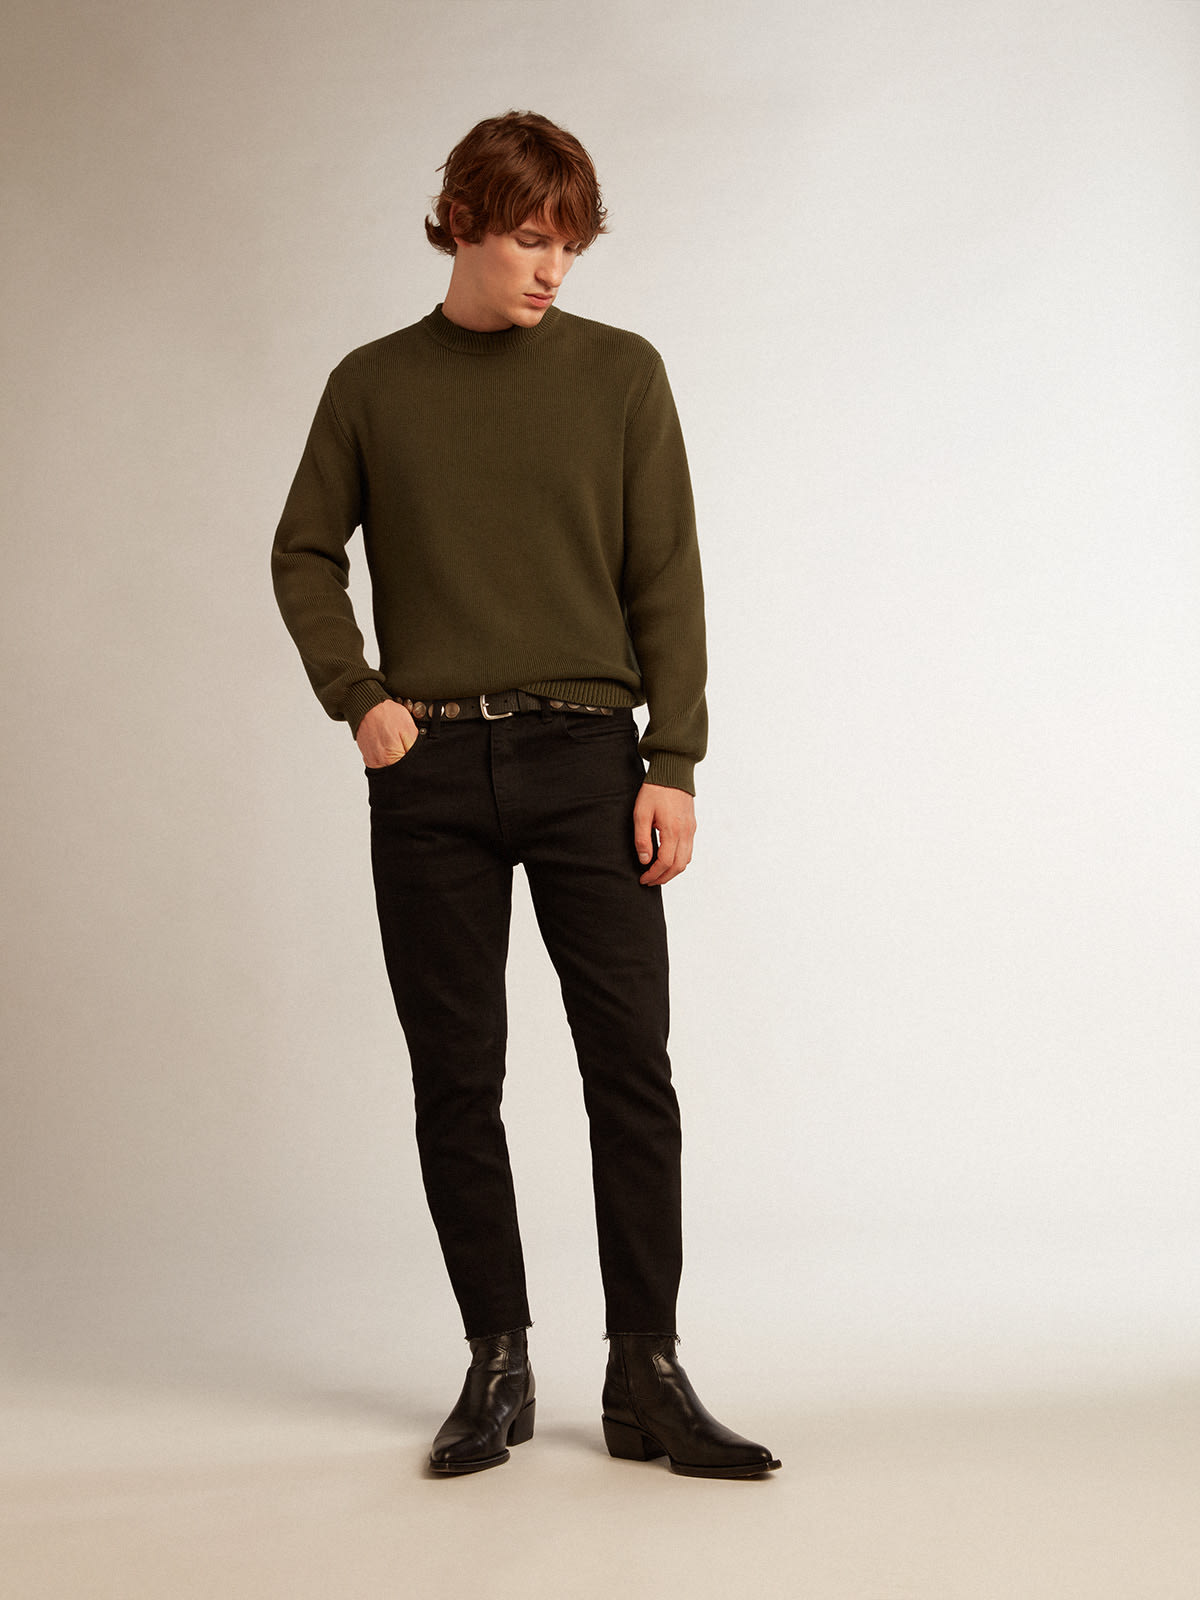 Golden Goose - Calça jeans skinny masculina preta in 